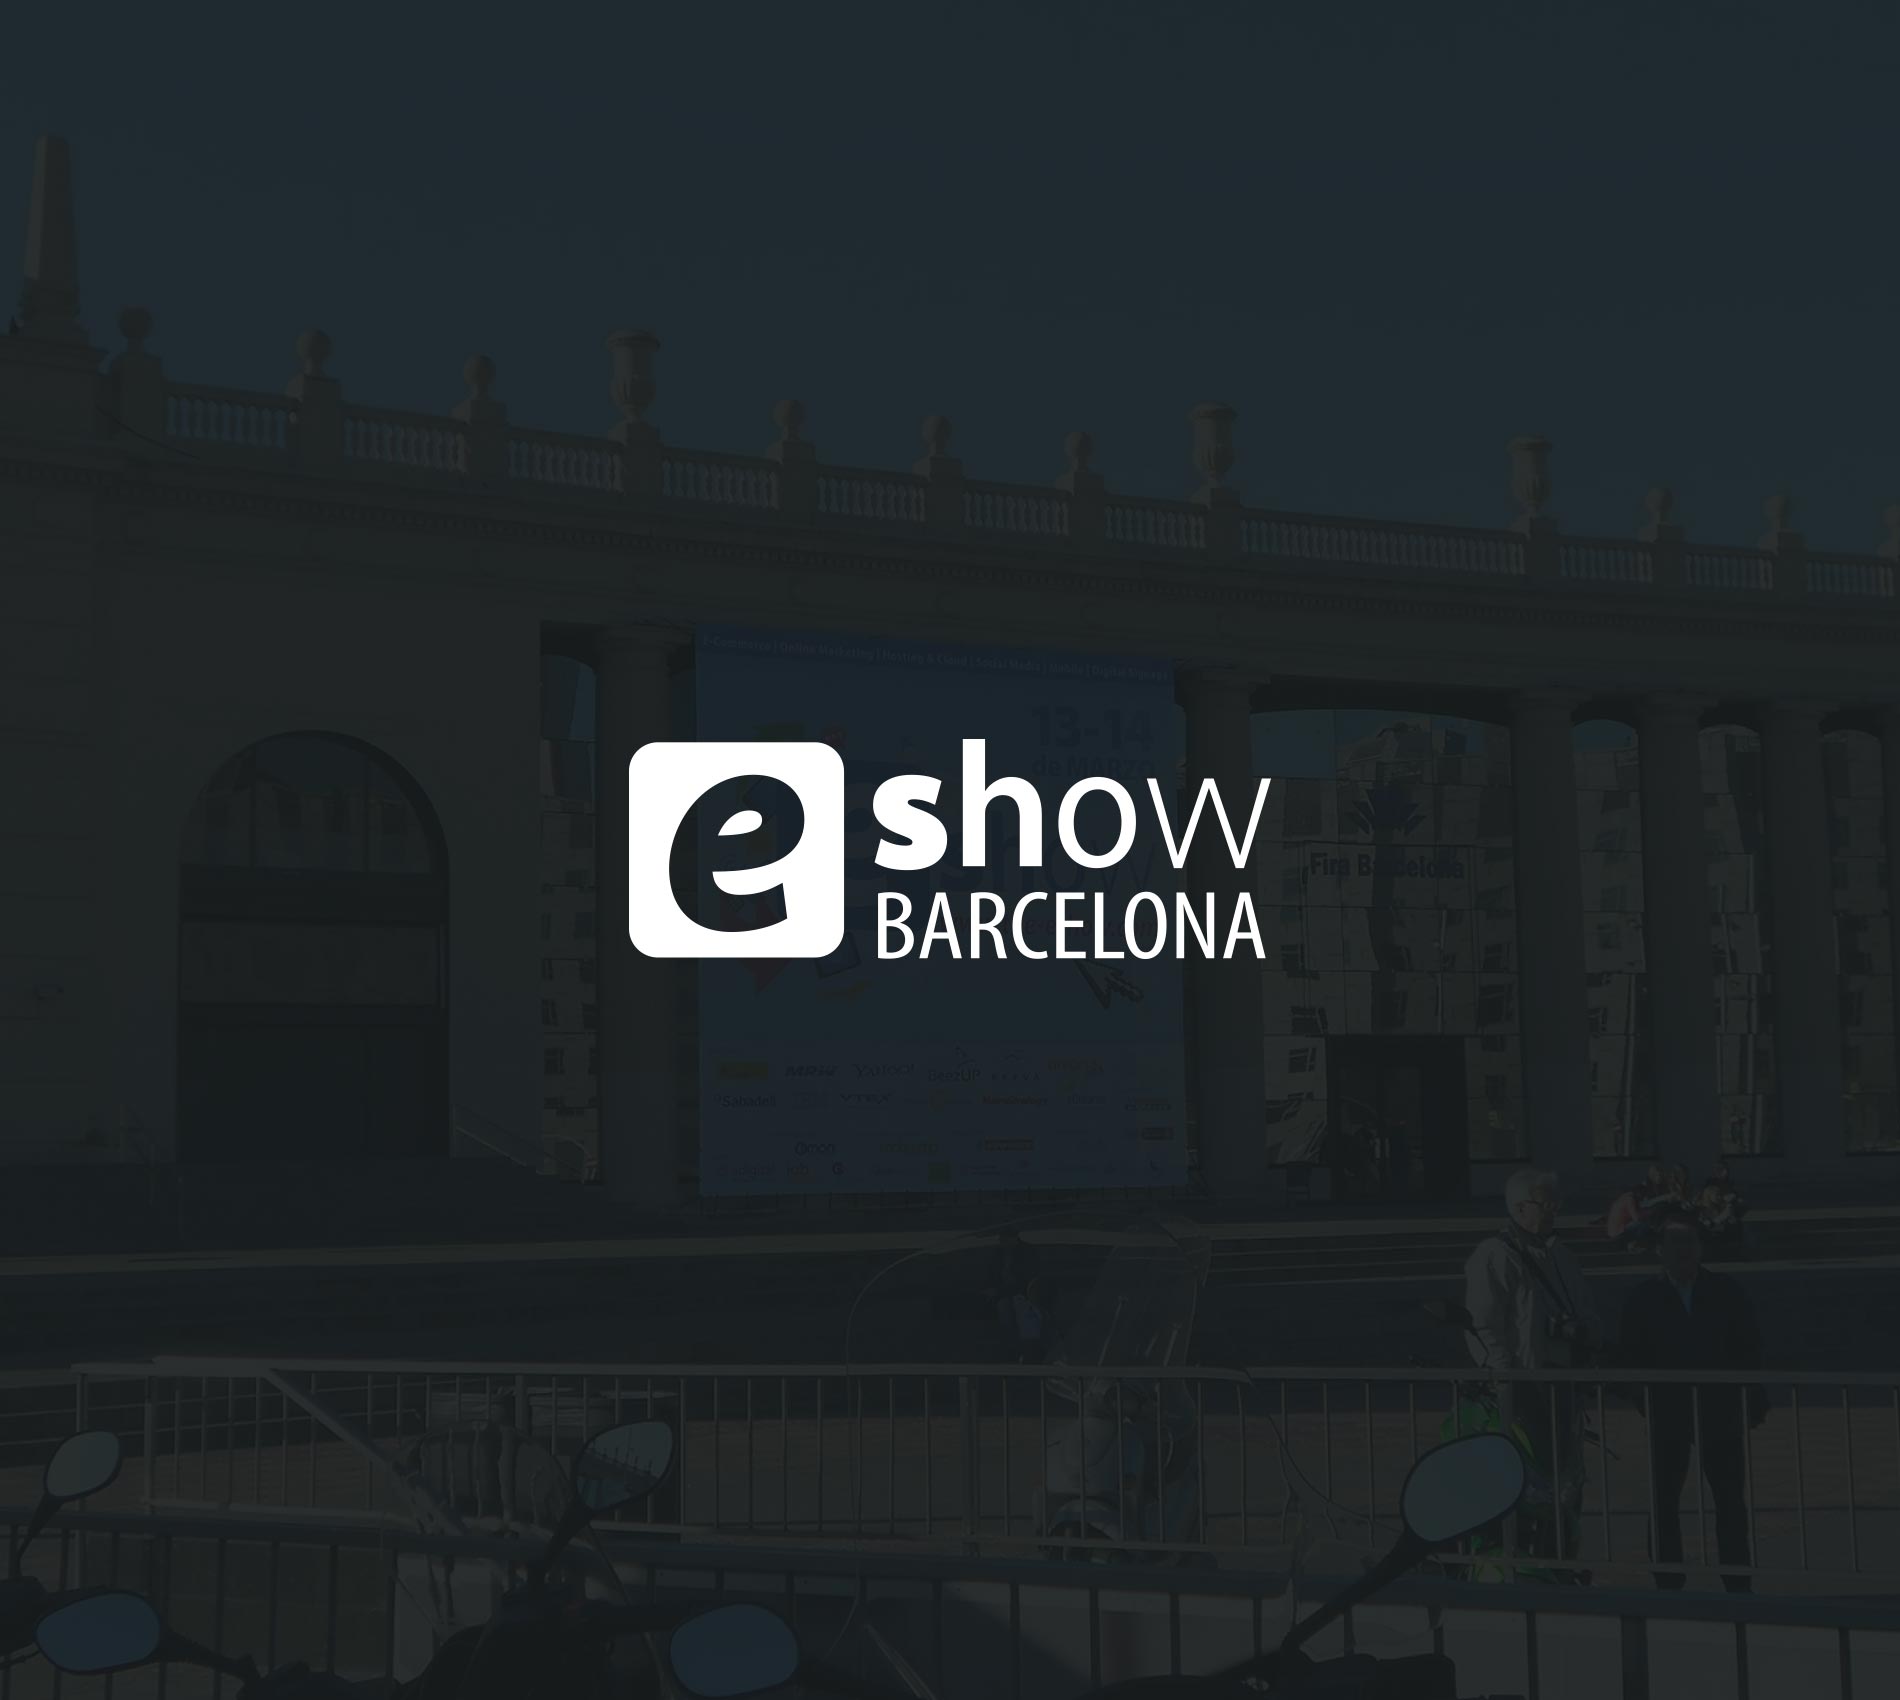 E-show 2013, Barcelona